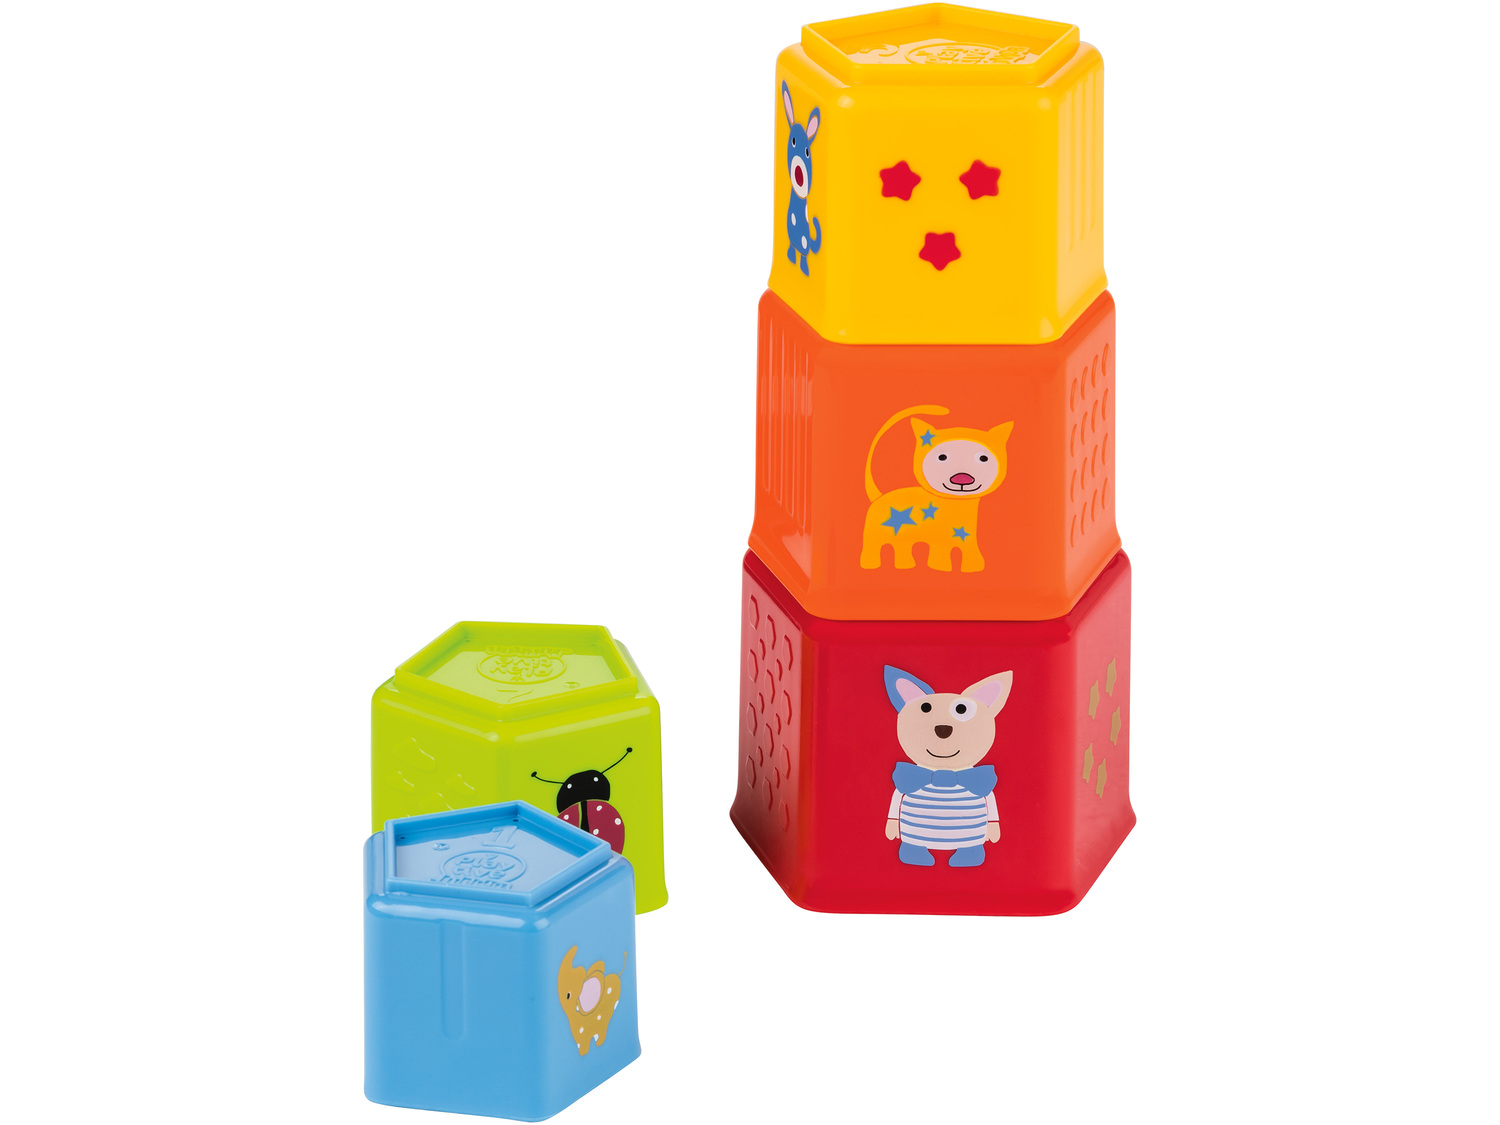 Zabawka do układania Playtive Junior, cena 22,99 PLN 
- wspiera koordynację wzrokowo-ruchową
Opis

- ...